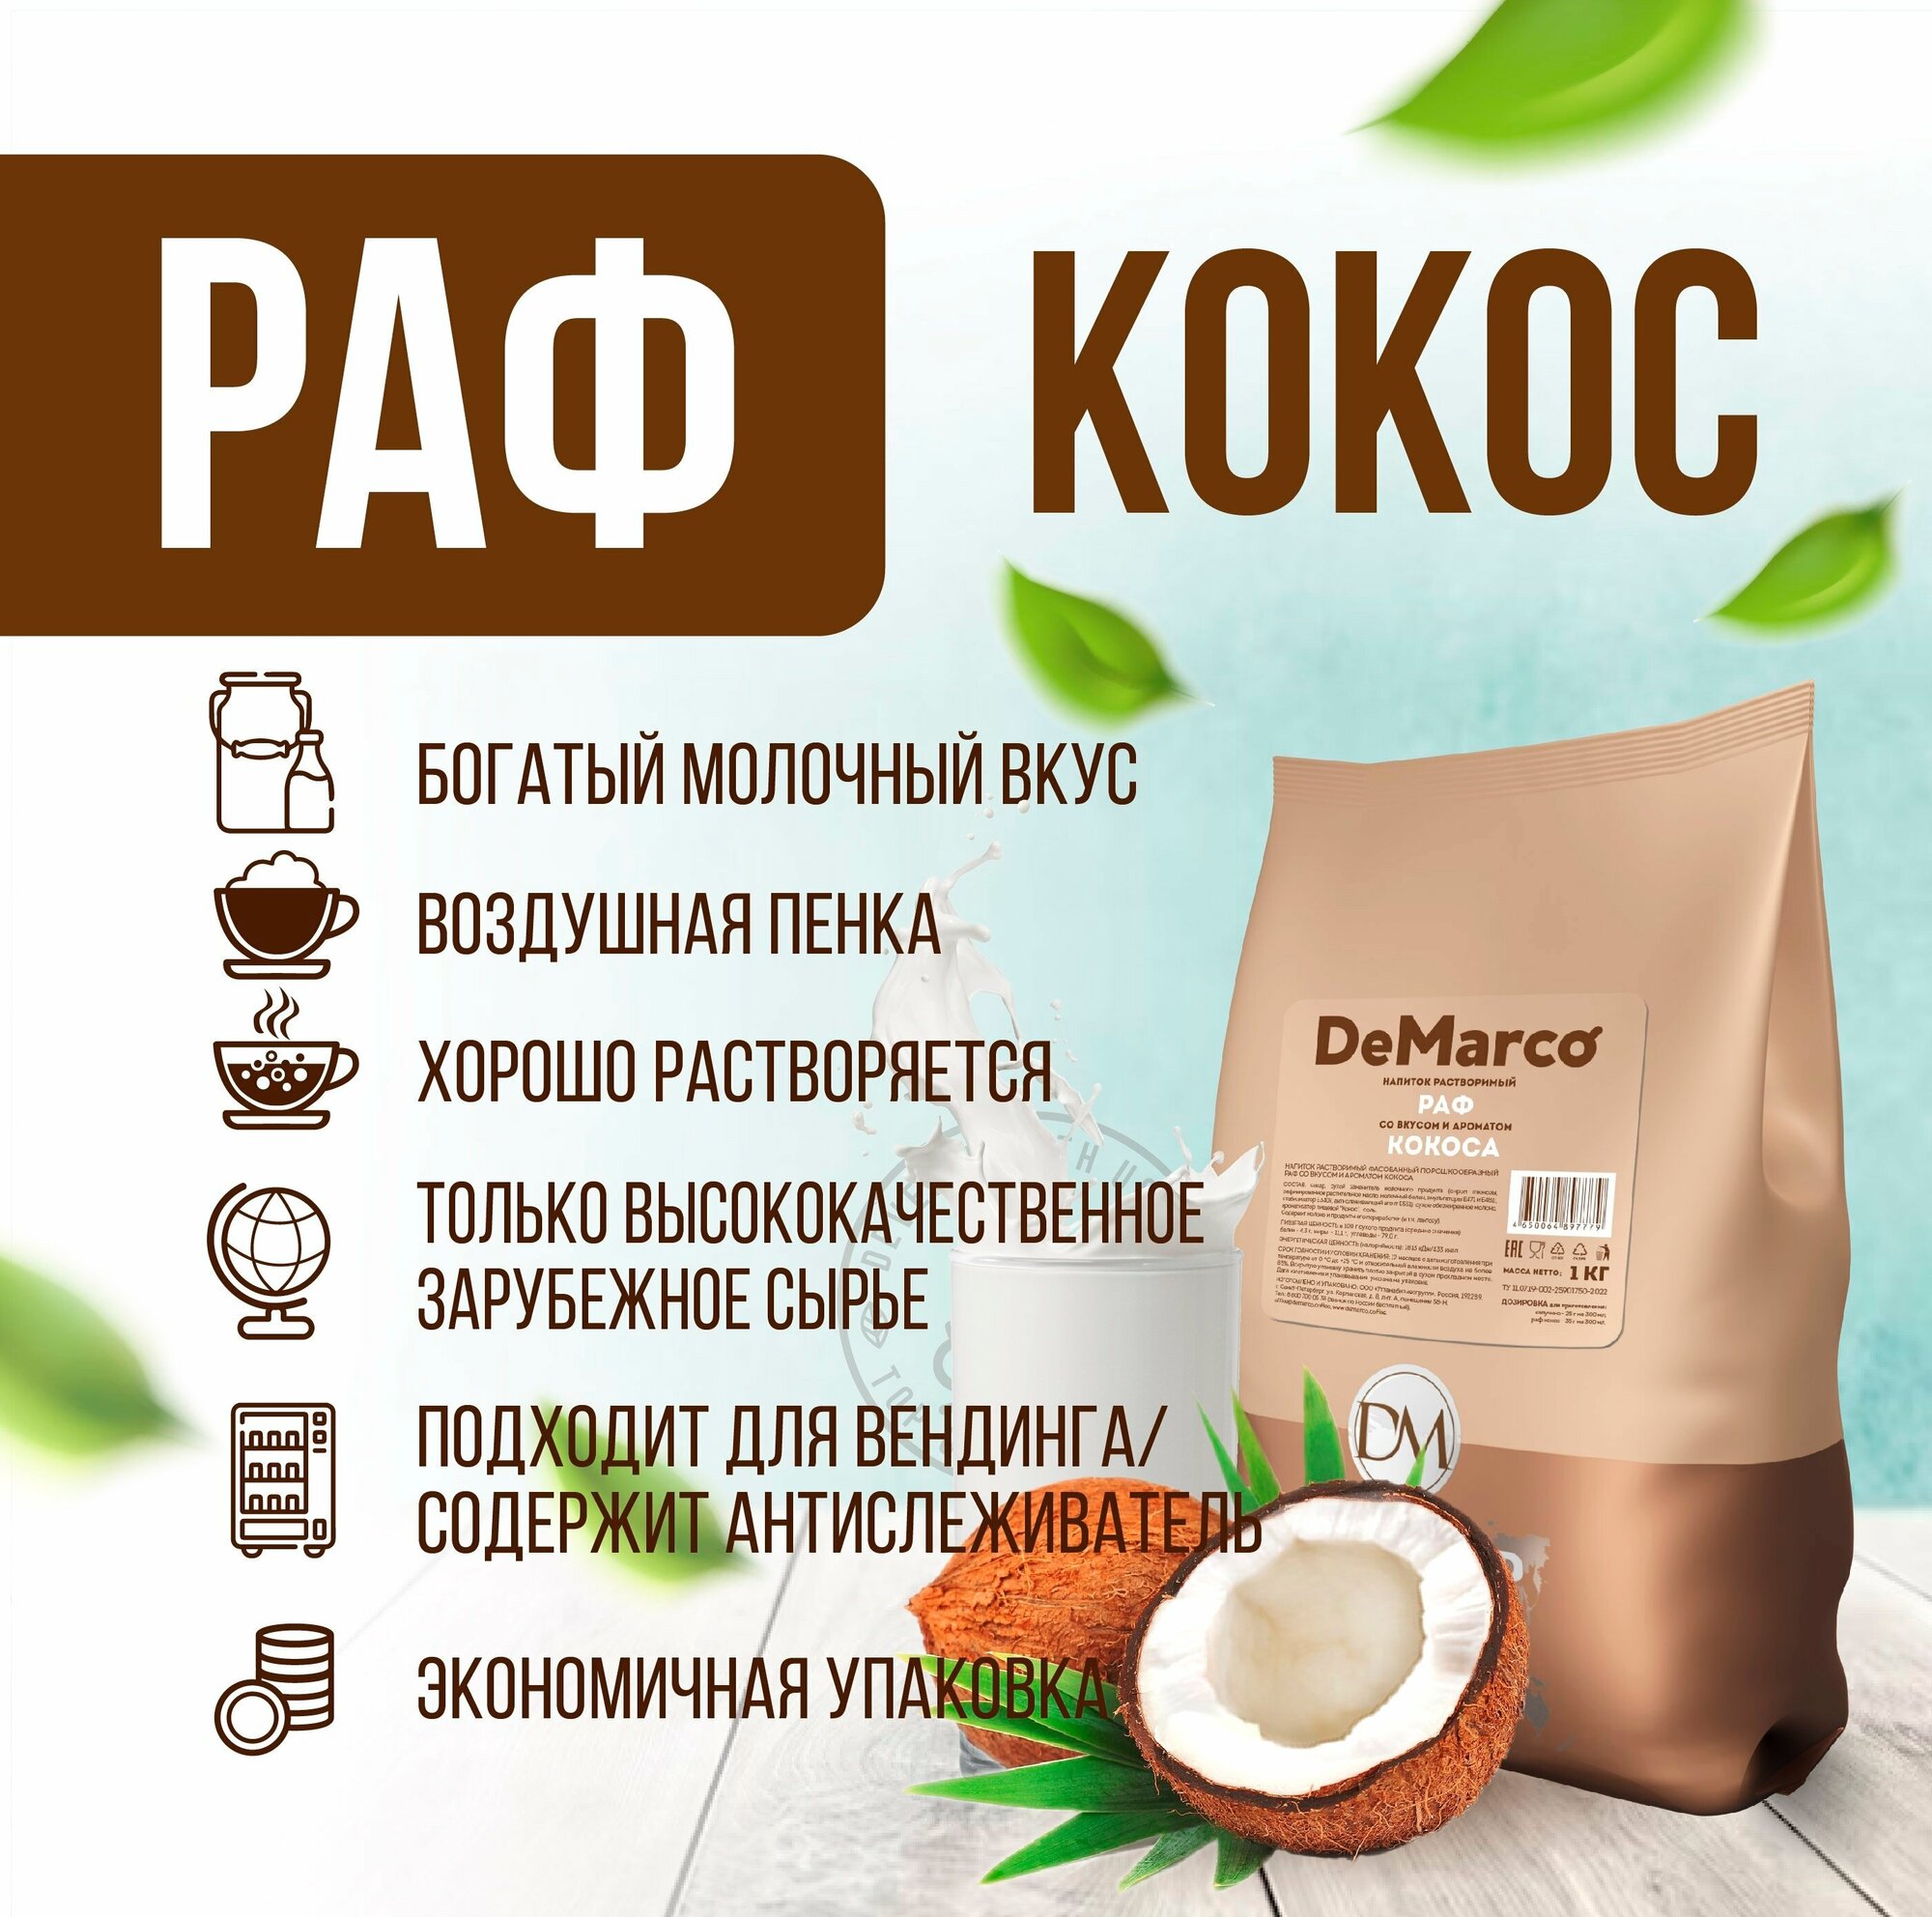 Напиток растворимый порошкообразный РАФ со вкусом и ароматом кокоса, DeMarco, 1 кг